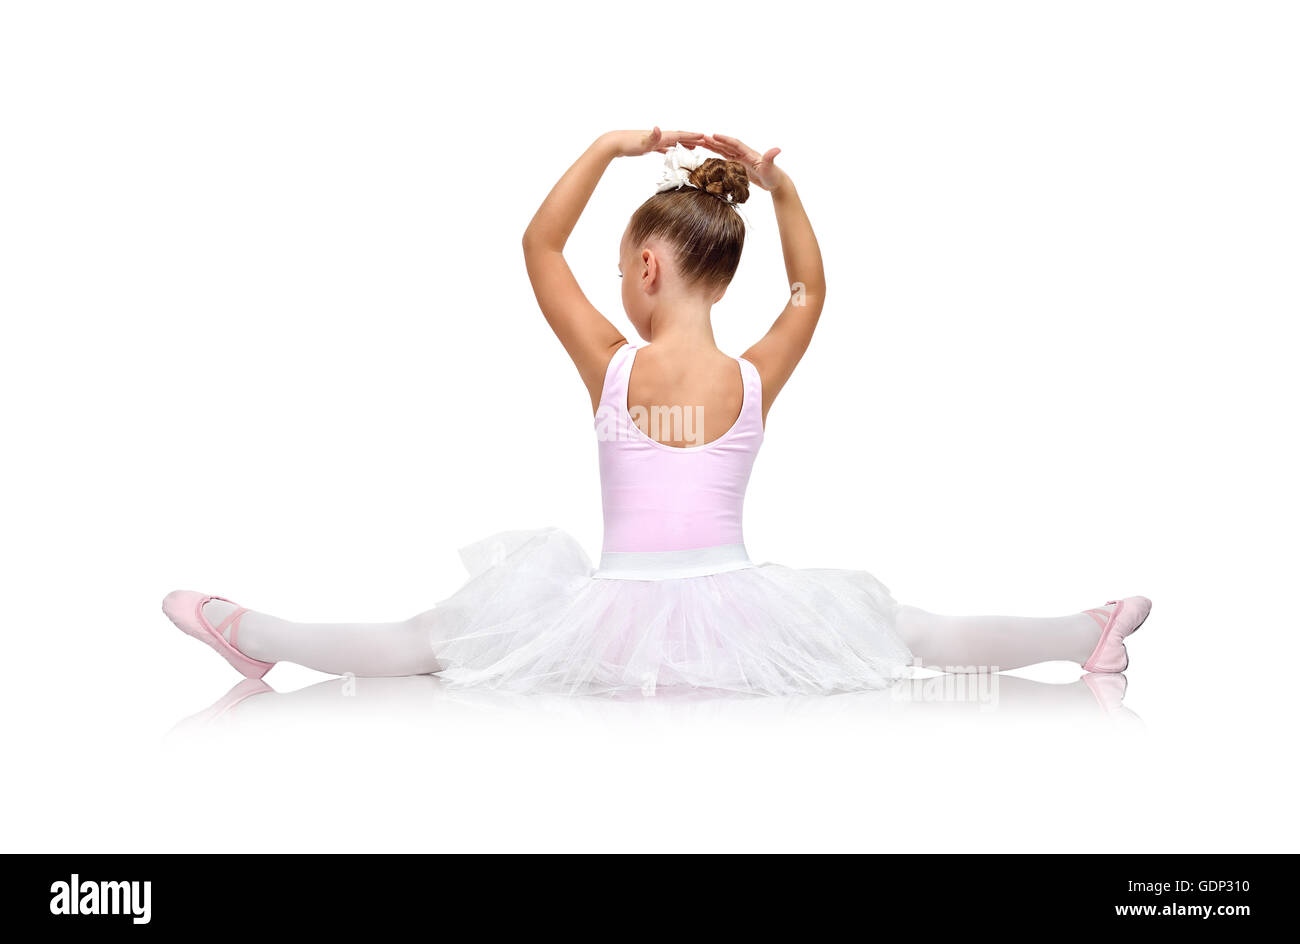 little ballerina in tutu sitting on floor, back view Stock Photo